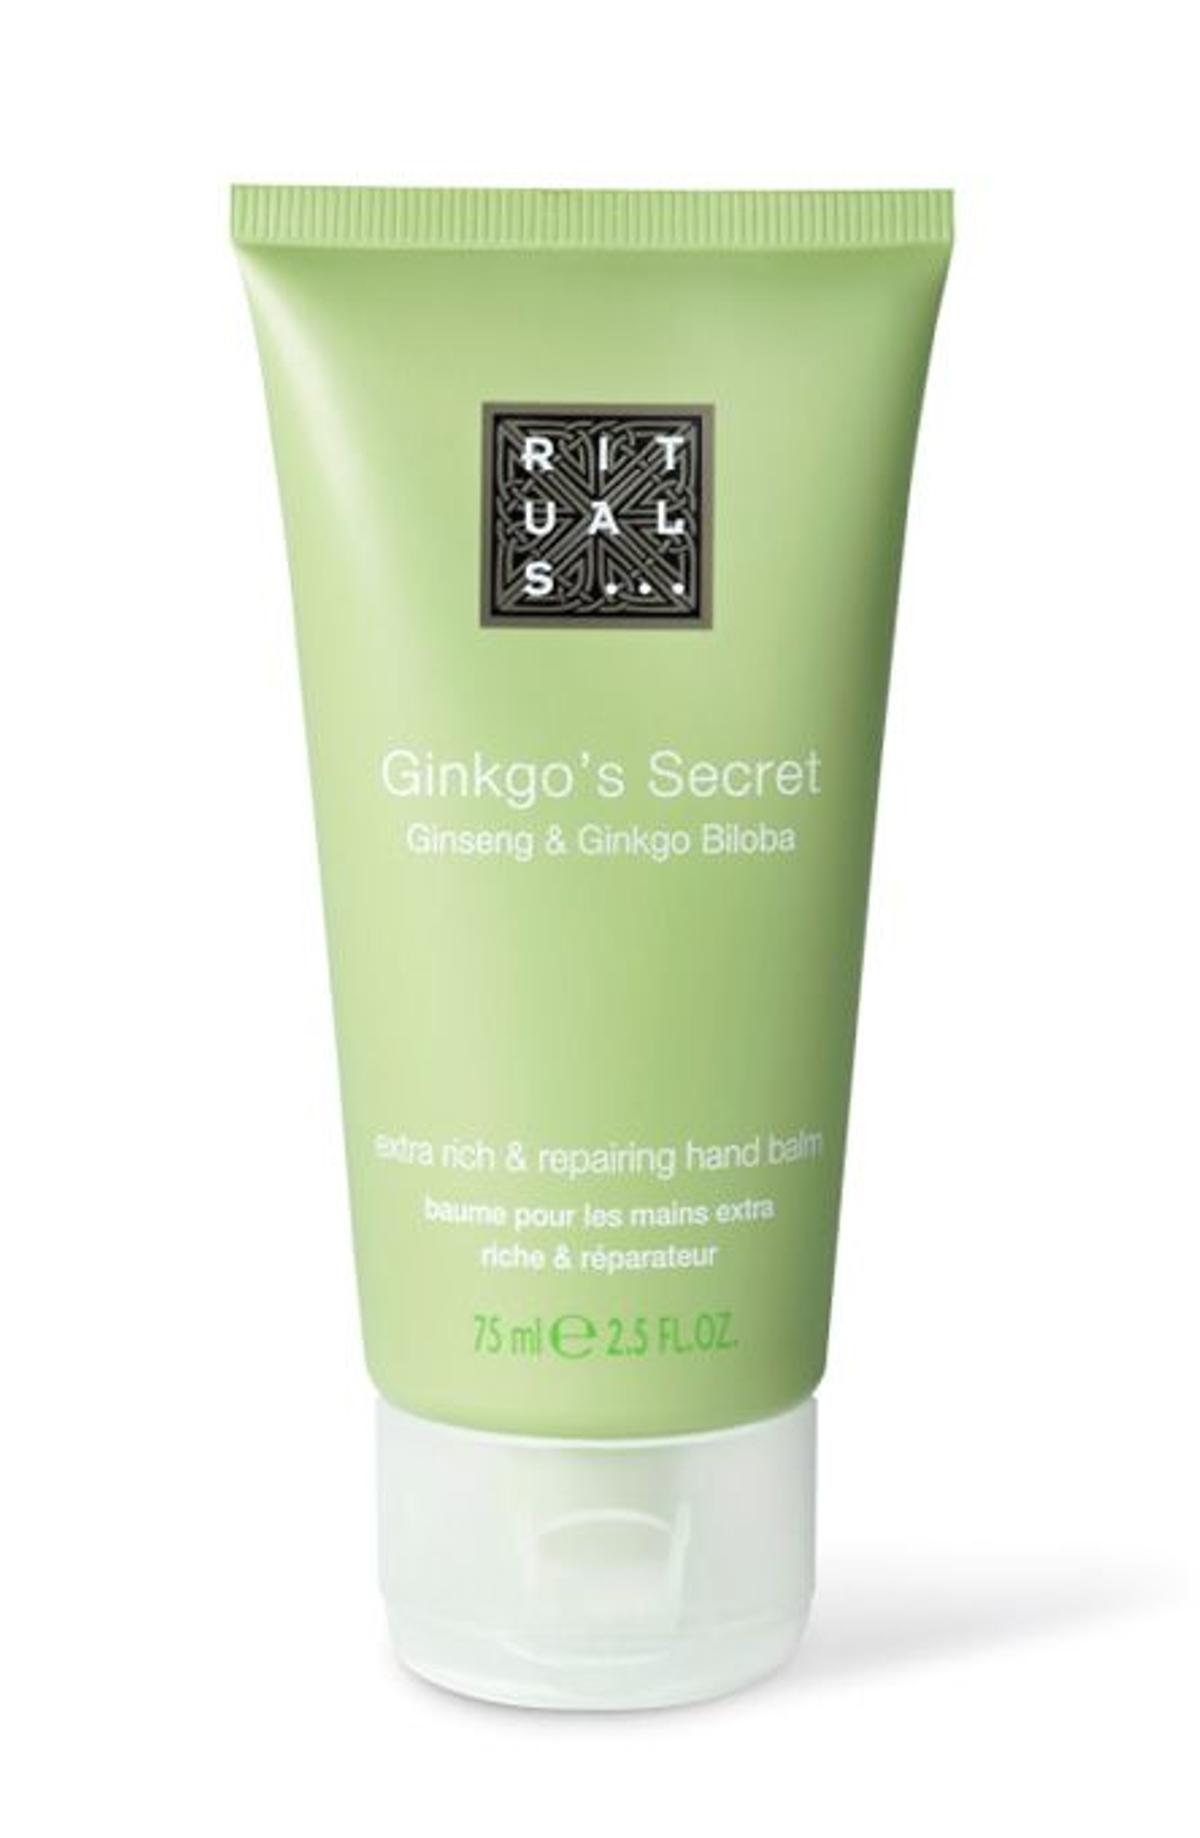 Ginkgo's Secret (10 €). Crema de manos reparadora.